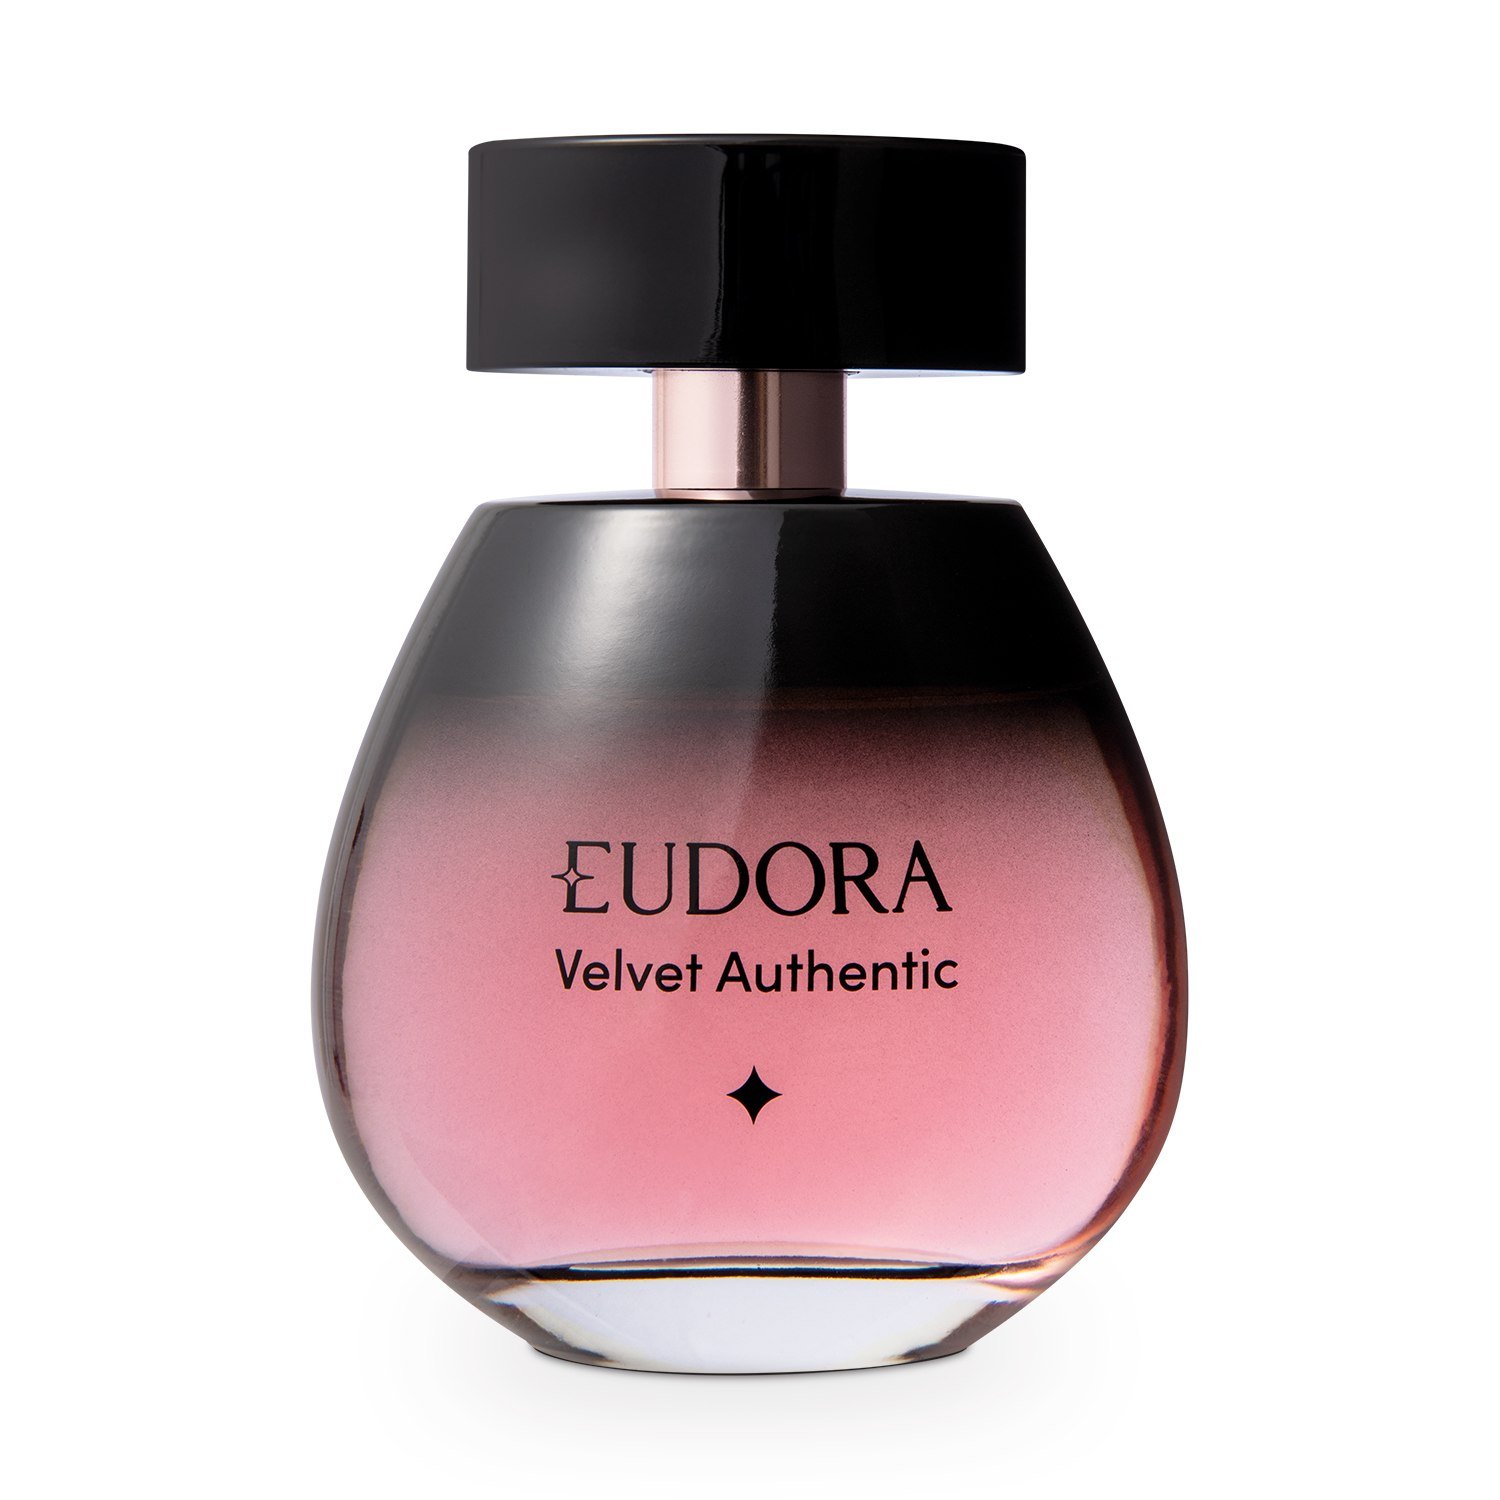 Eudora Kiss Me Now Desodorante Colônia 50ml - Cuidando da Beleza Perfumaria  & Acessorios